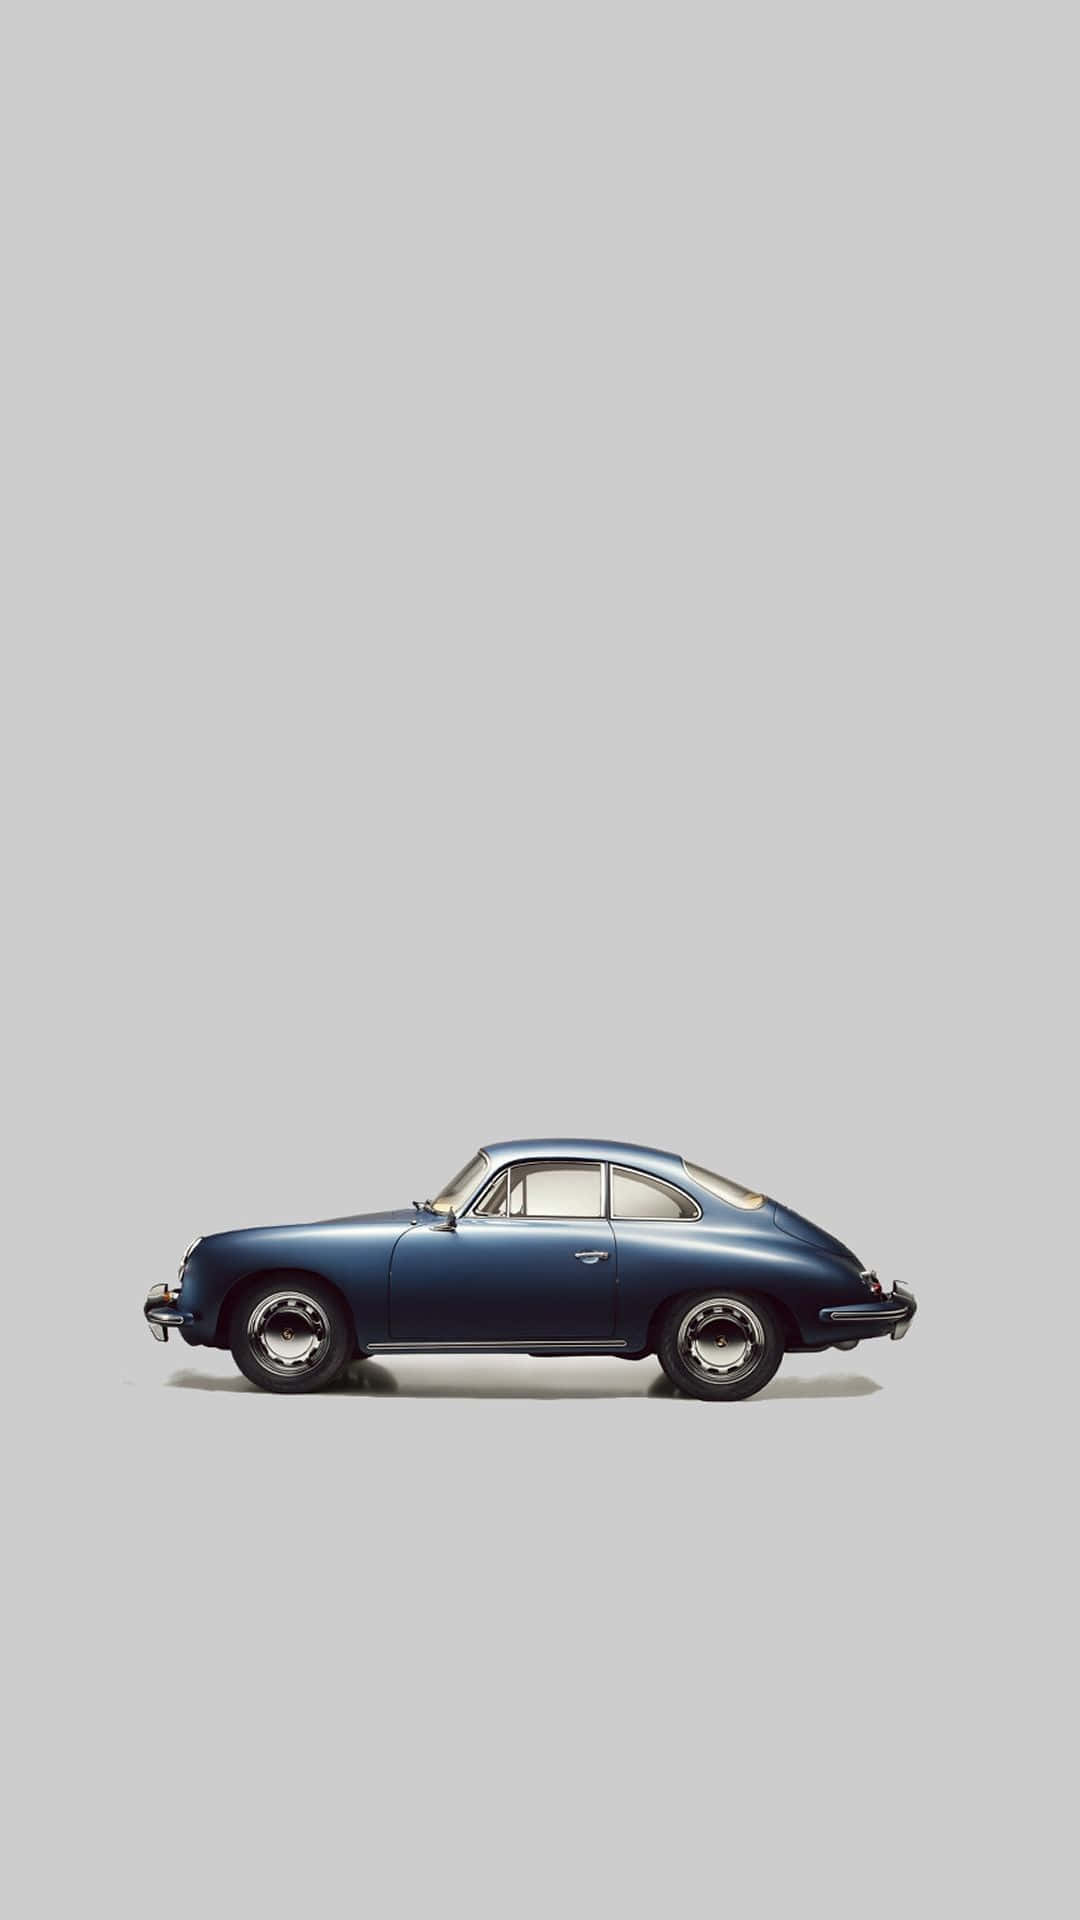 Einblaues Auto Wird Vor Einem Grauen Hintergrund Gezeigt. Wallpaper